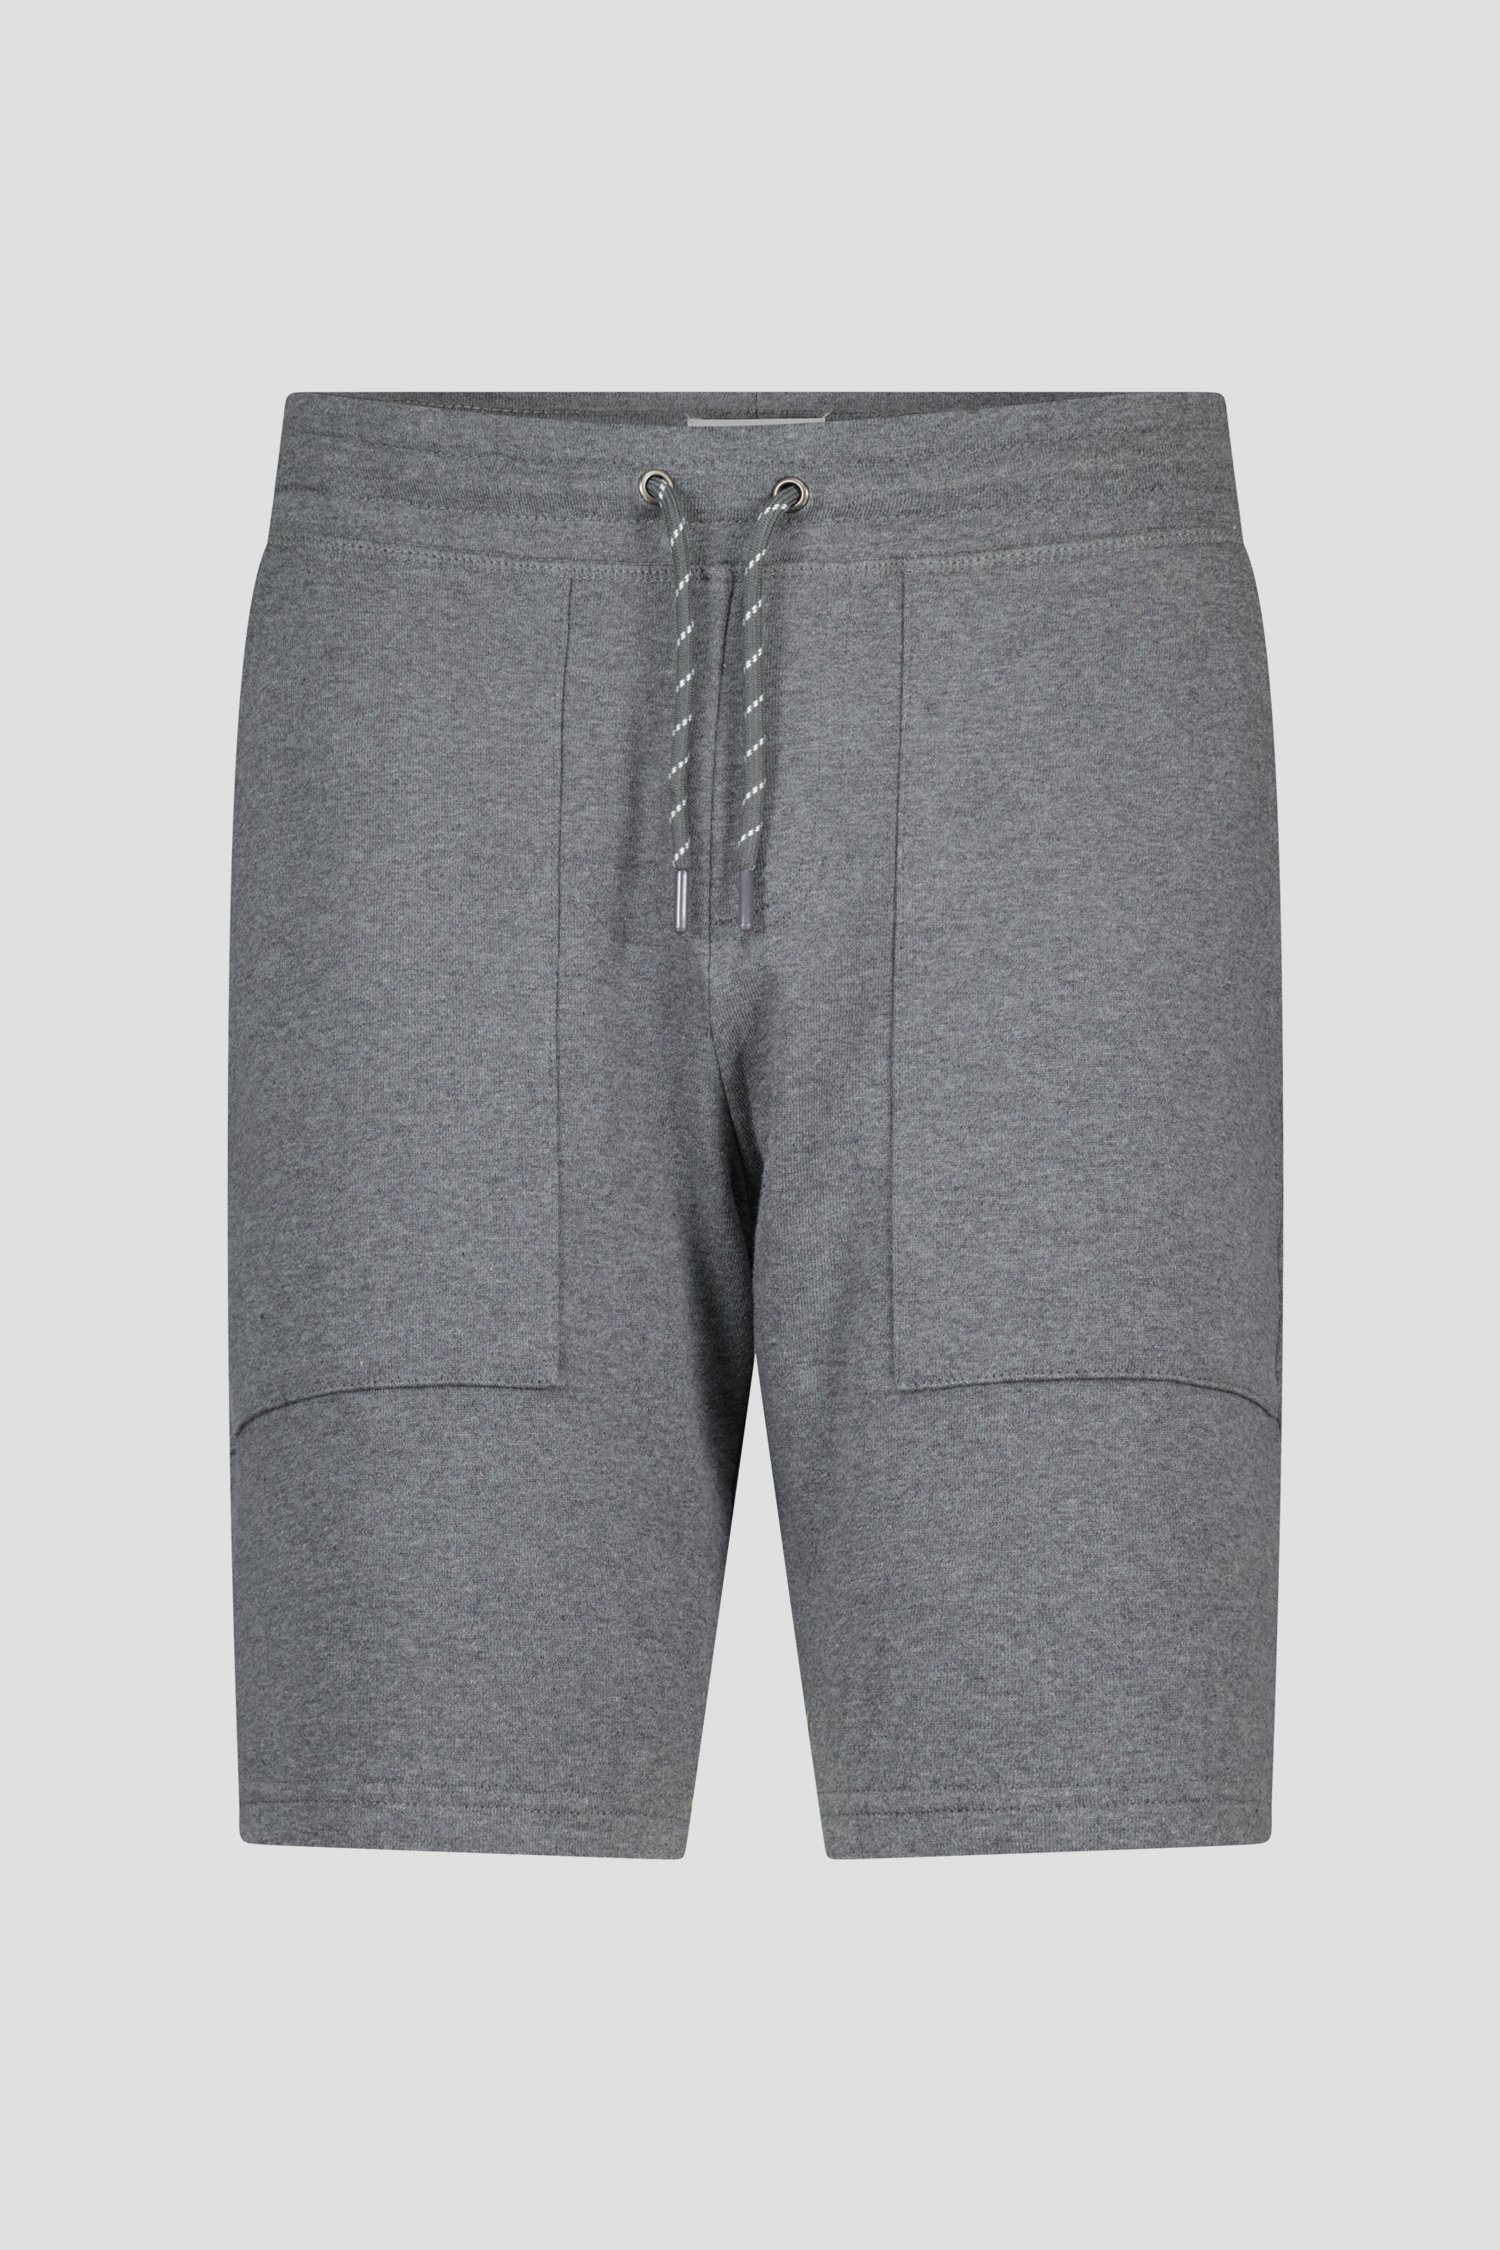 Short gris de Liberty Island homewear pour Hommes